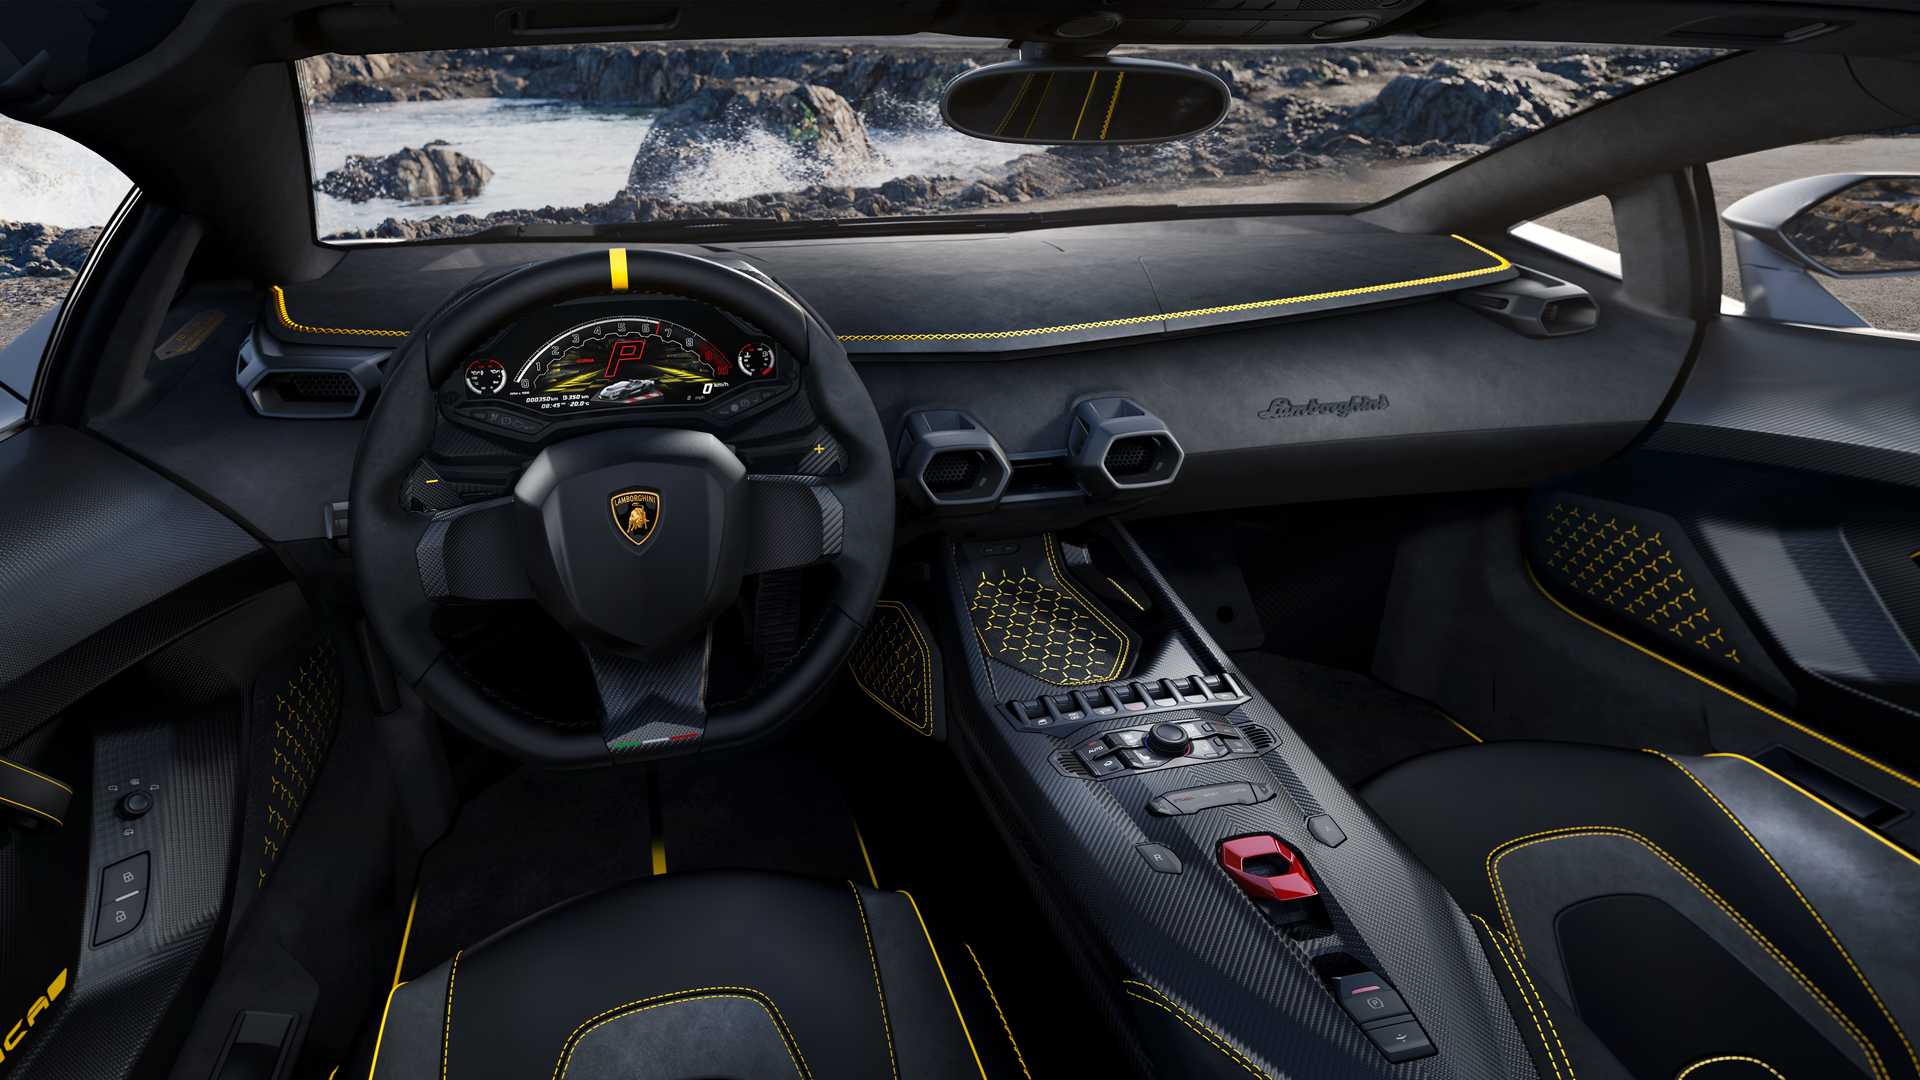 Lamborghini ra mắt bộ đôi siêu xe V12 chạy xăng cuối cùng, sau đây sẽ toàn siêu xe điện êm ru chưa biết nẹt pô kiểu gì - ảnh 17